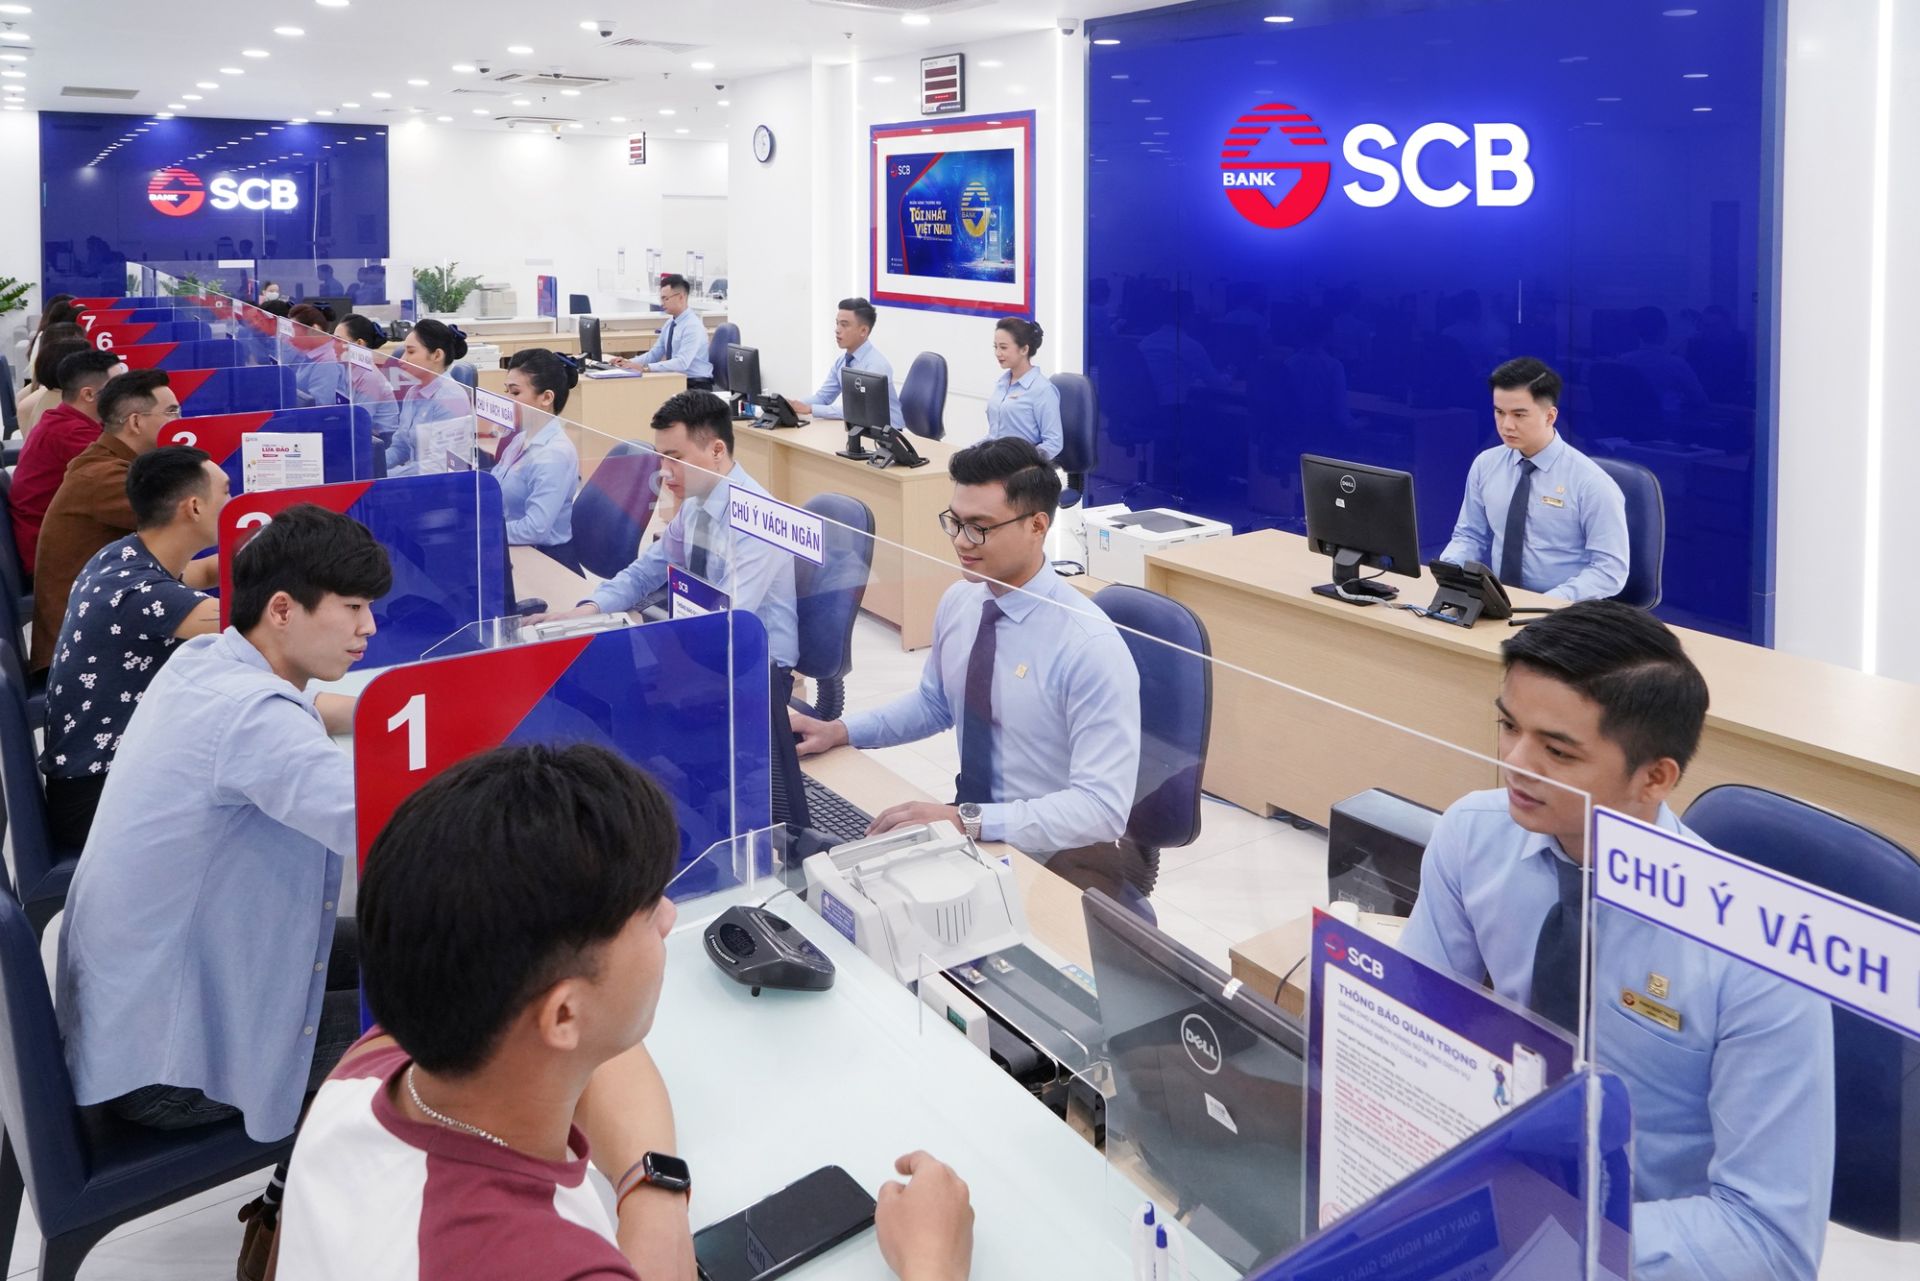 Ngân hàng Sài Gòn (SCB)